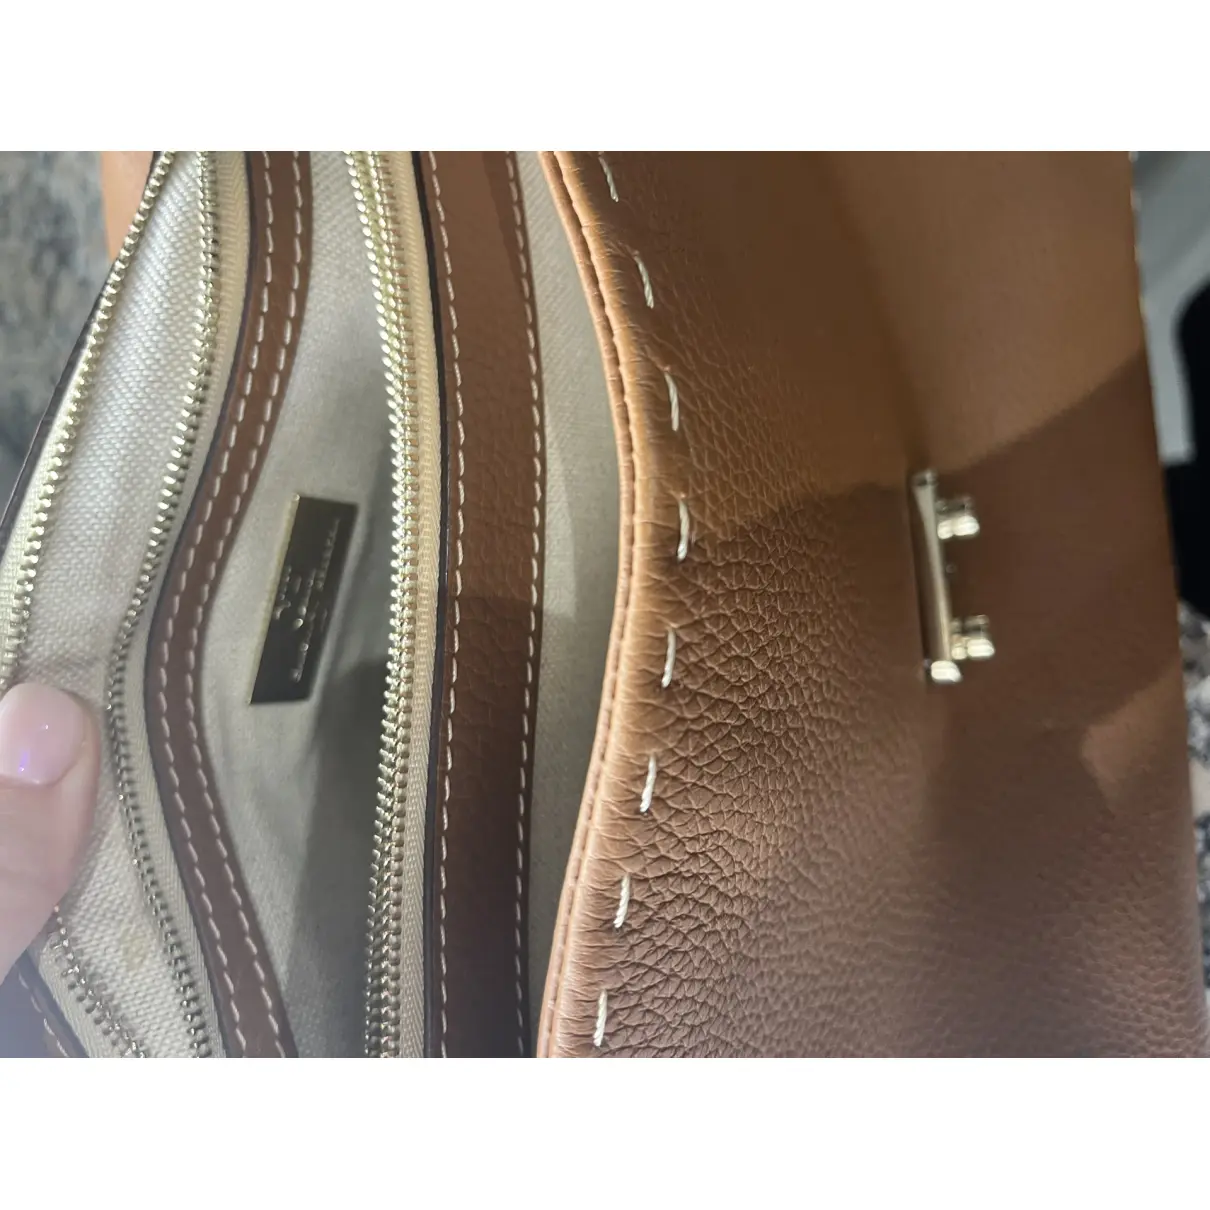 Luxury Carolina Herrera Handbags Women